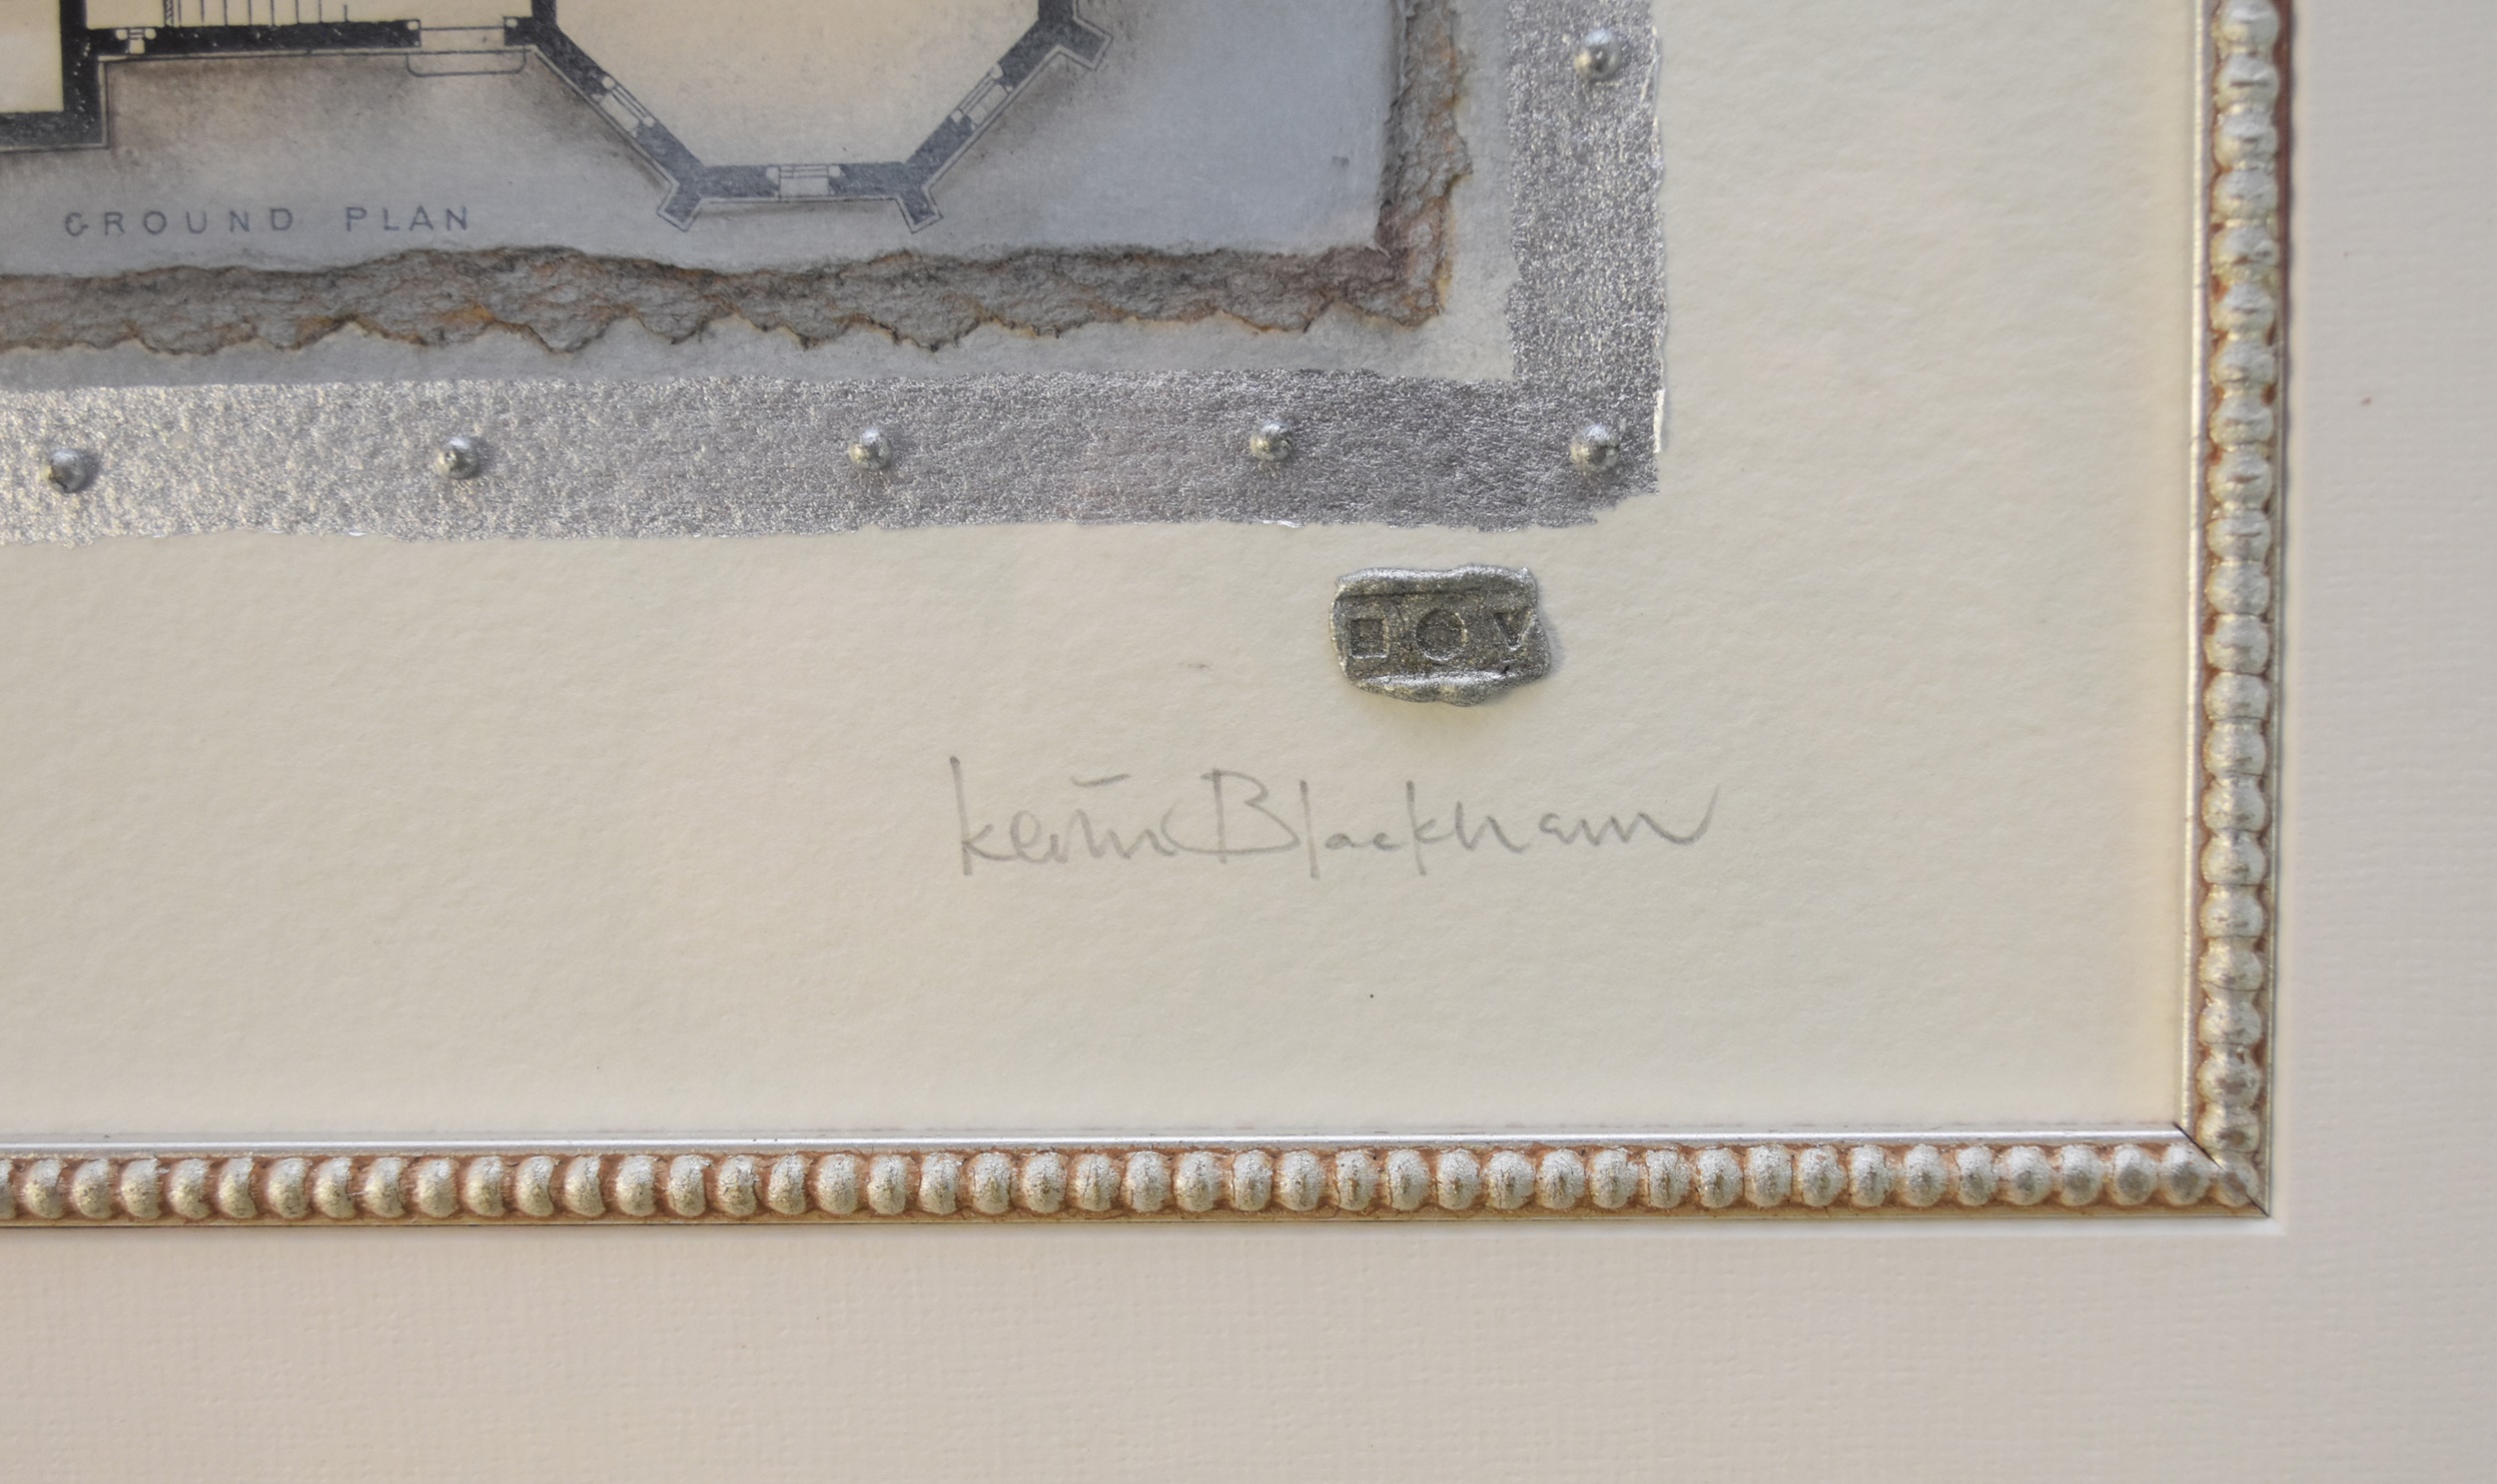 Kevin Blackham (British 20th Century) Maison de Ville, signed lower right, measurements 43 x 25 - Image 3 of 3